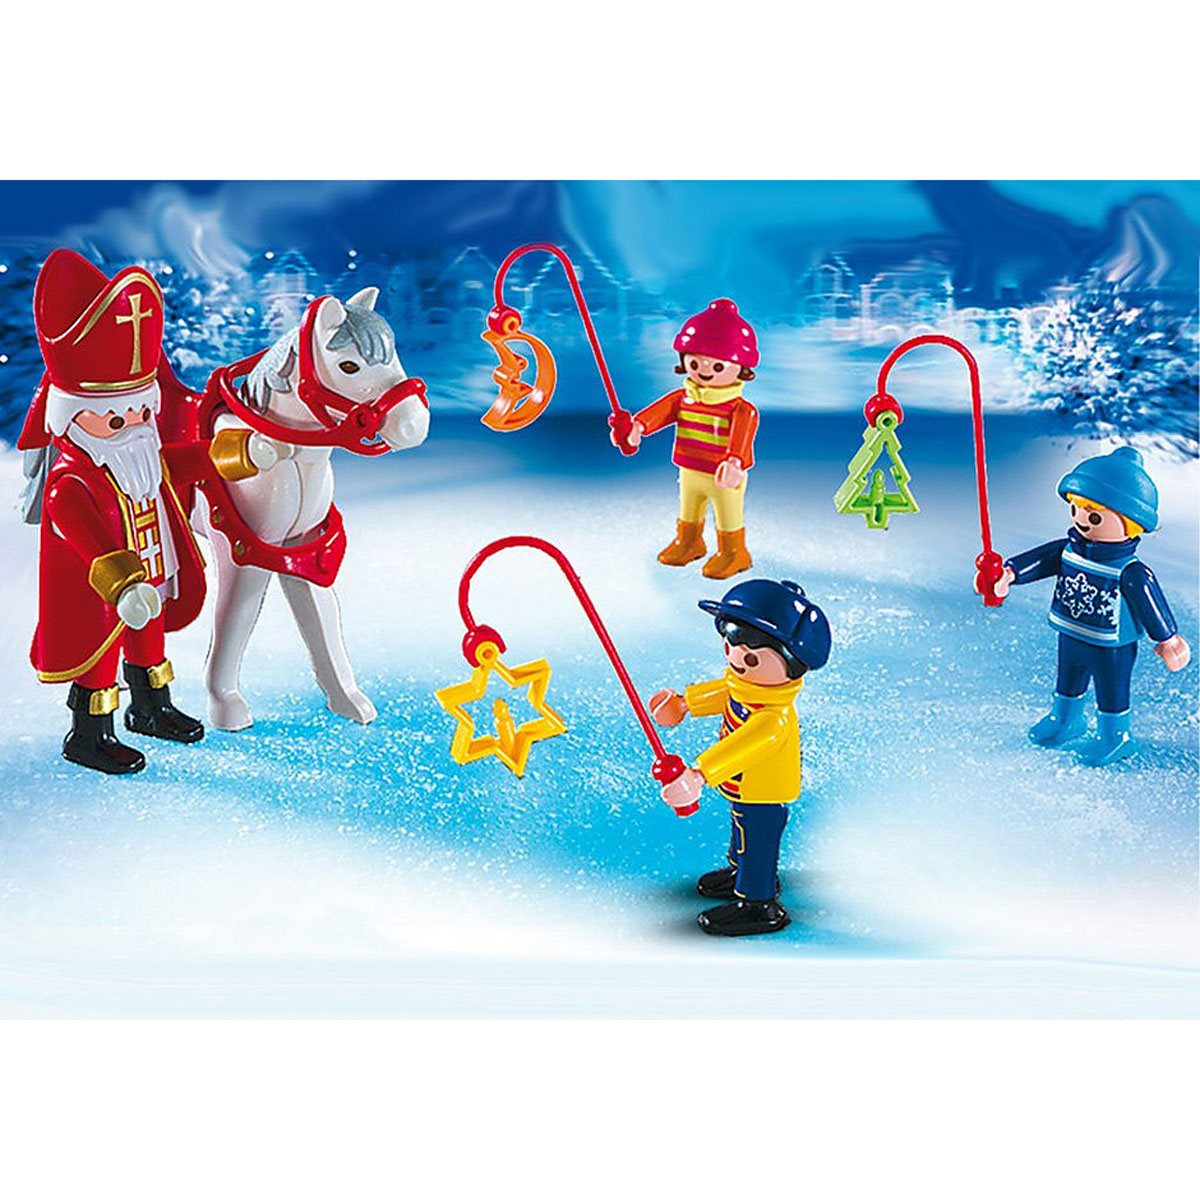 Playmobil 5593 Christmas Parade -